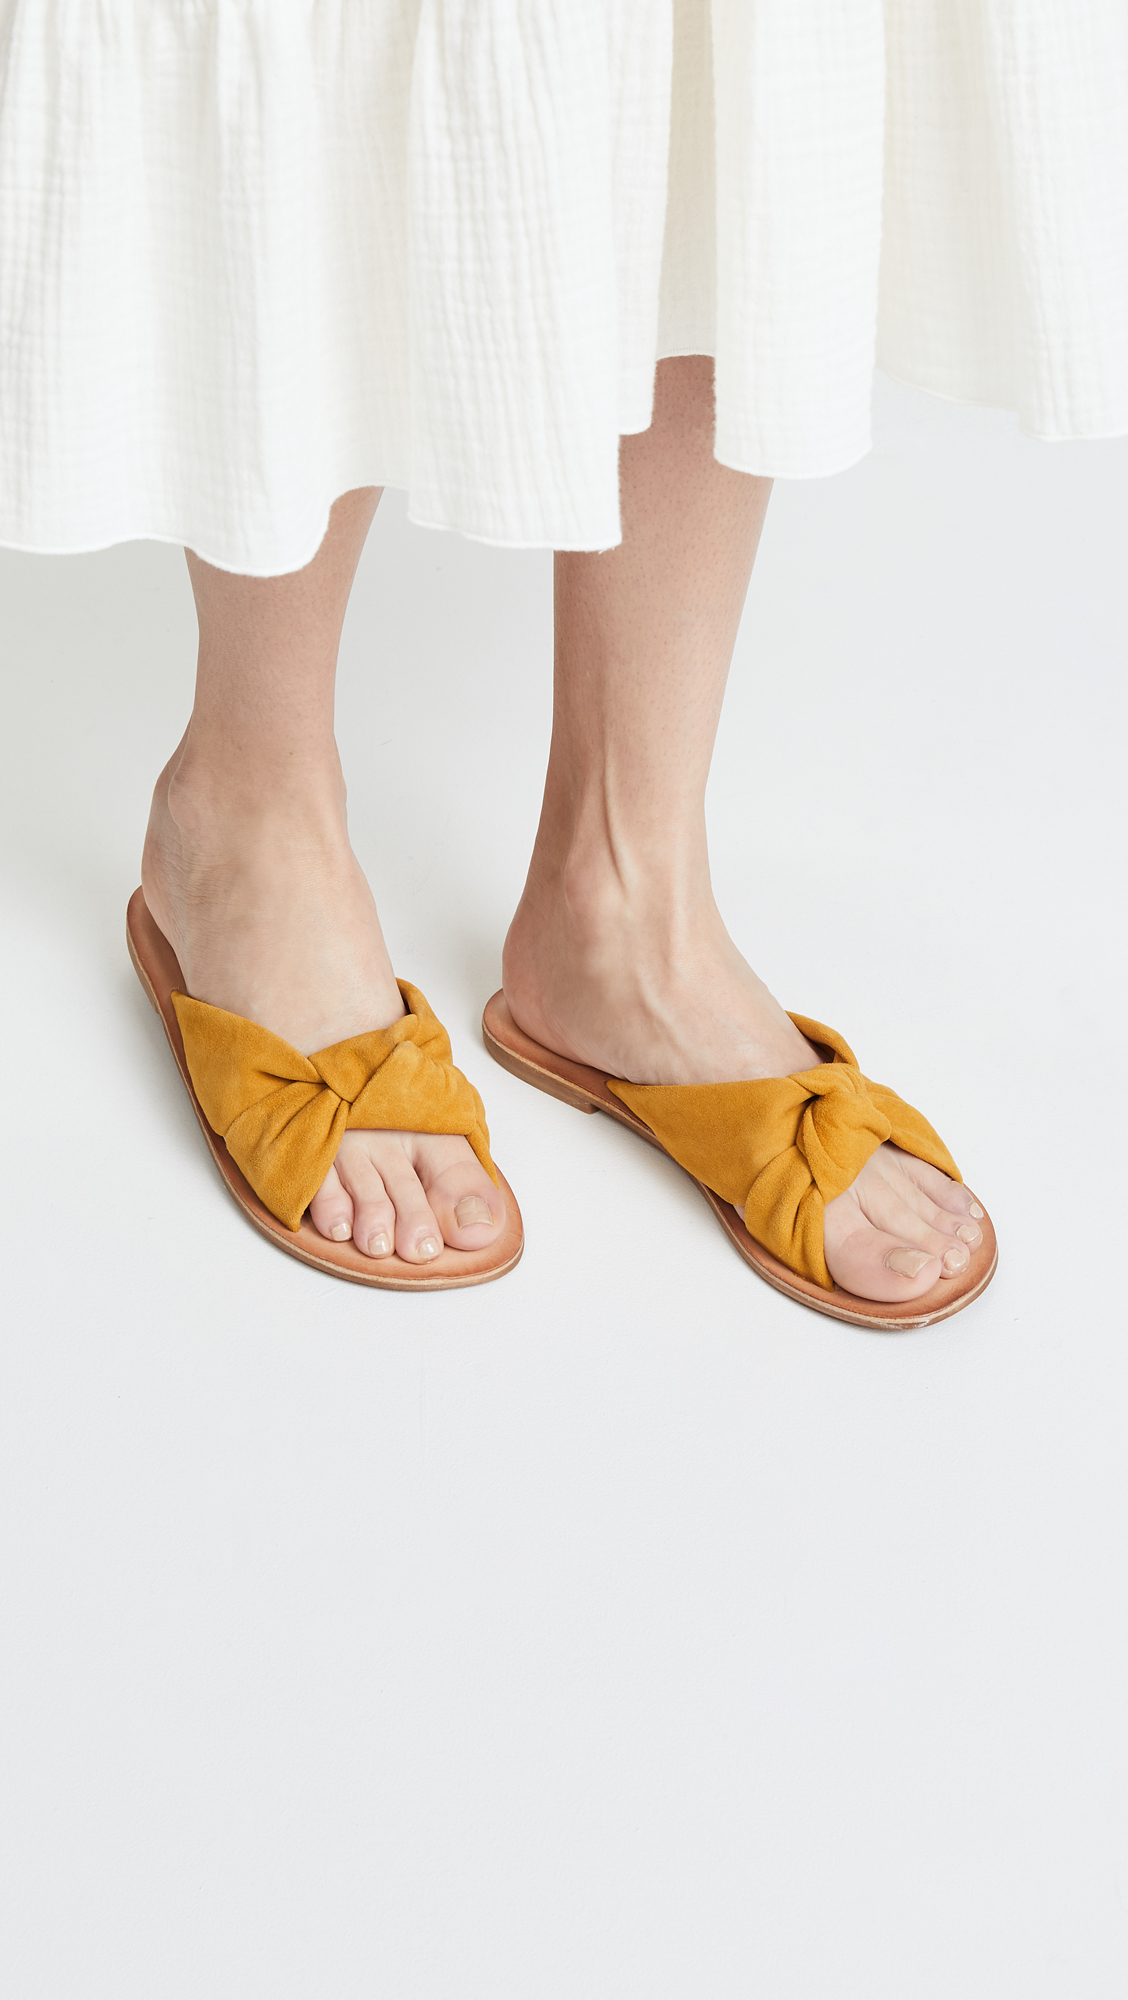 jeffrey campbell slide sandals